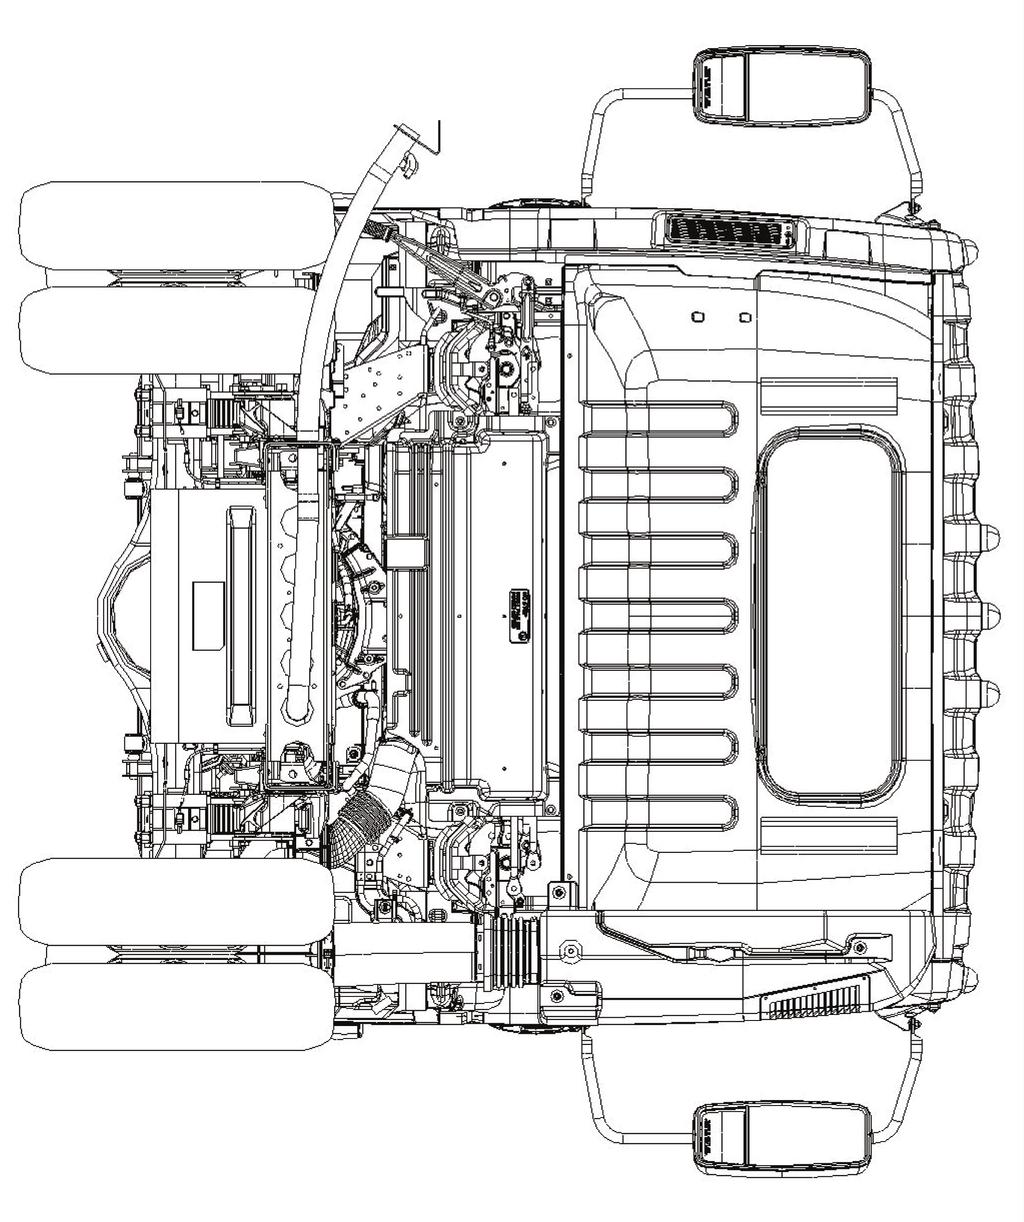 2017 Isuzu Truck Rear View Fuel Fill